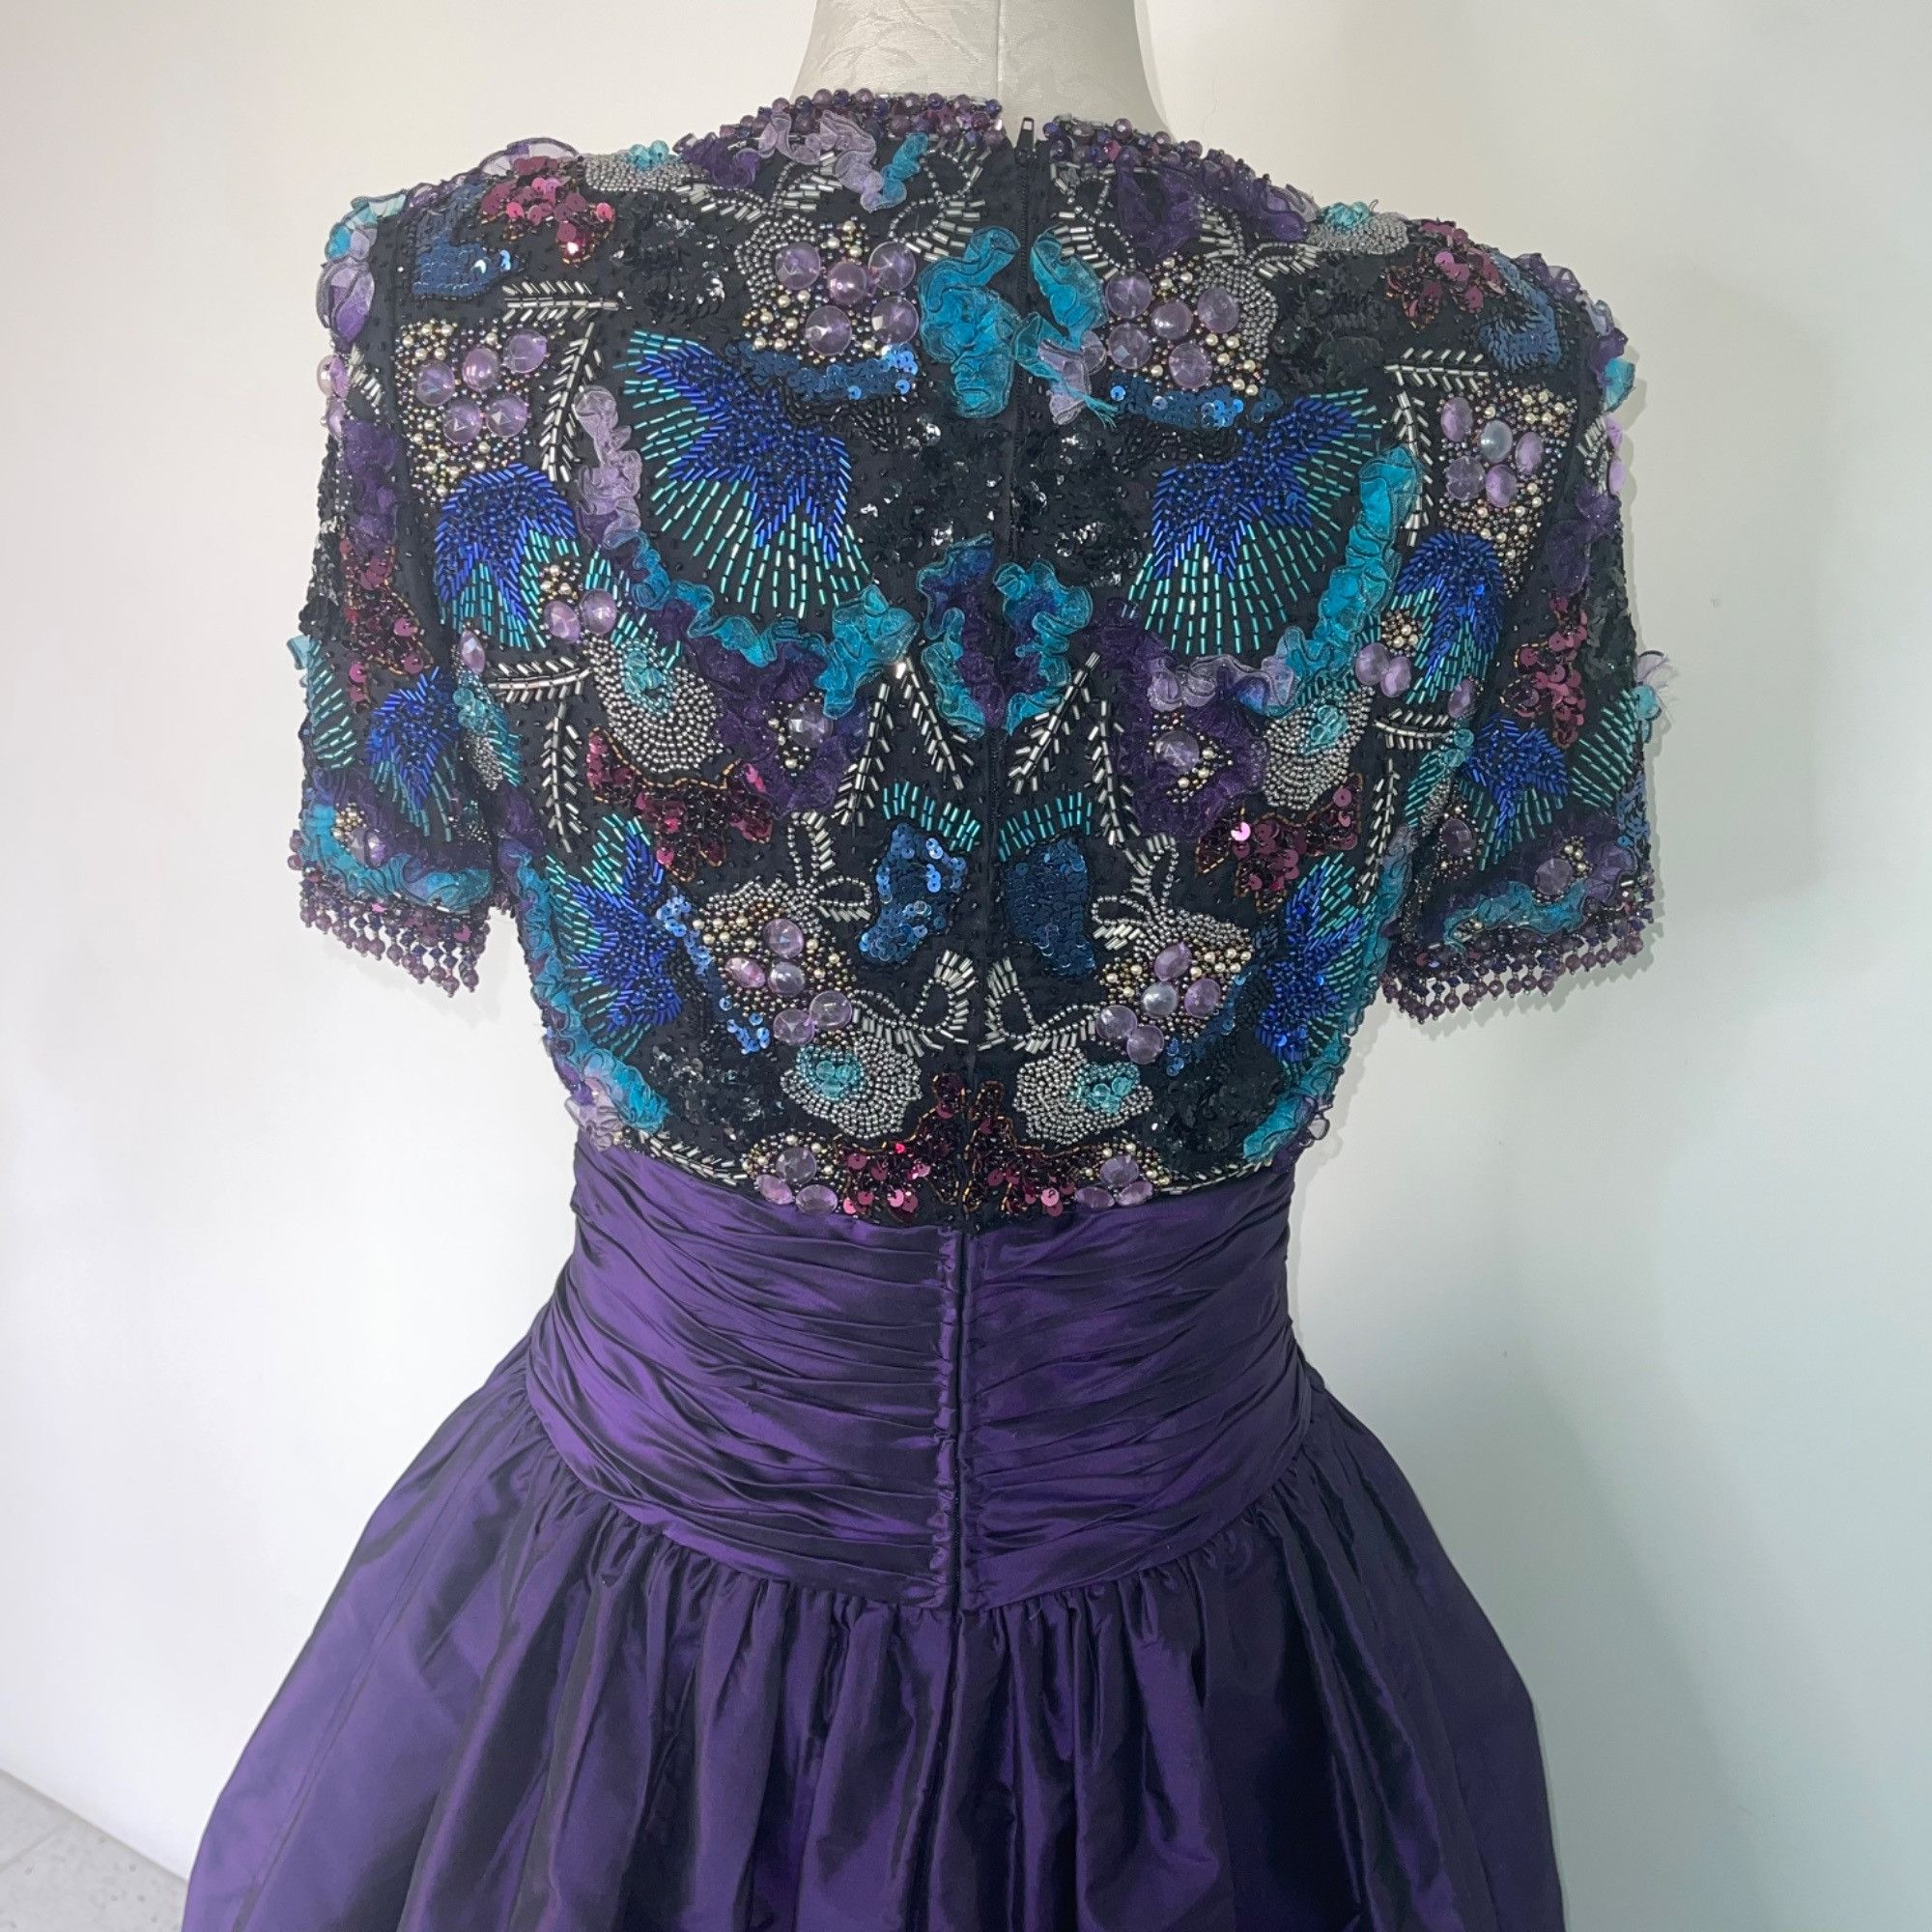 Vintage Victoria Royal Ltd. Vintage Womens Ballgown Size 8 80s 90s Size M / US 6-8 / IT 42-44 - 7 Thumbnail